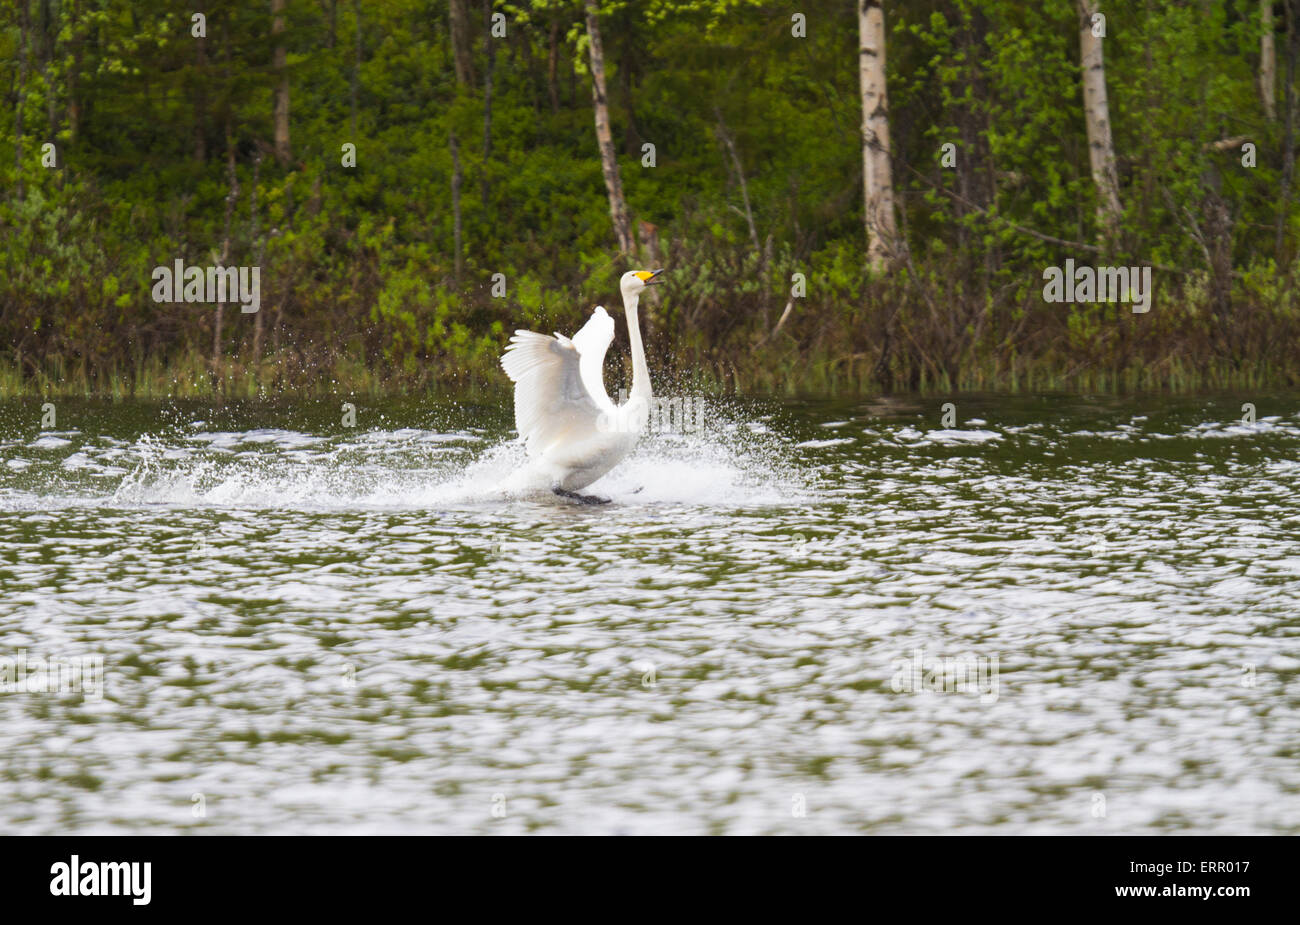 Whooper swan landing on water in Boden, Norrbotten, Sweden Stock Photo